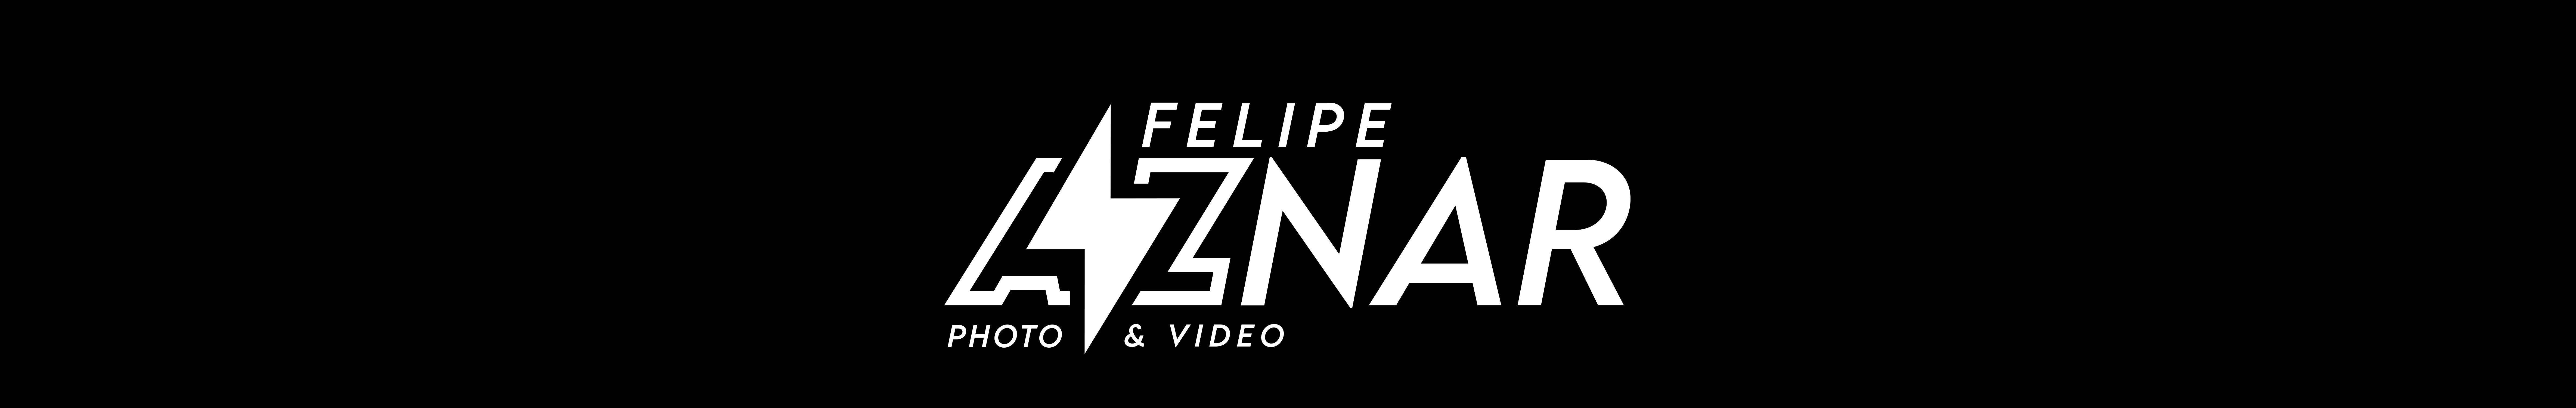 Felipe Aznar のプロファイルバナー